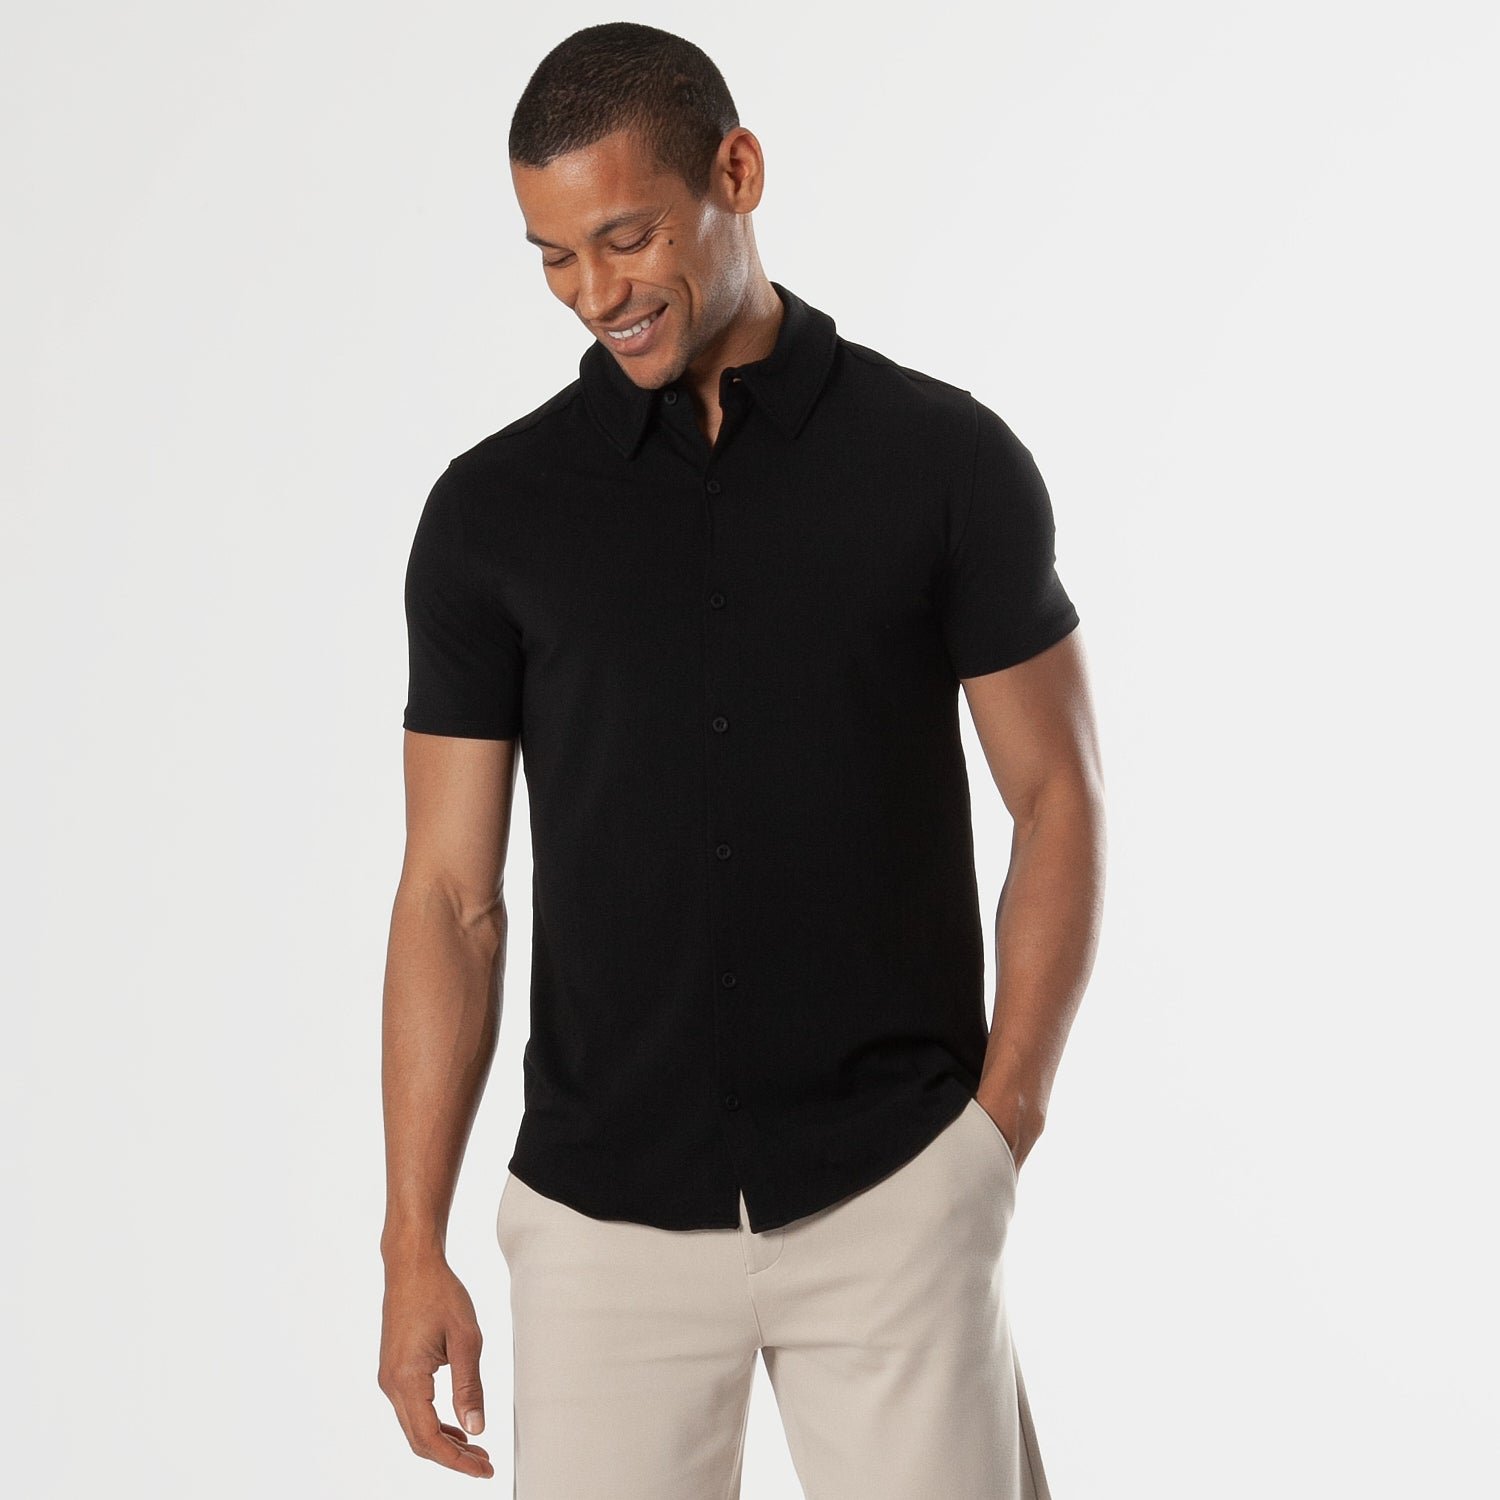 Black Short Sleeve Button Up Shirt